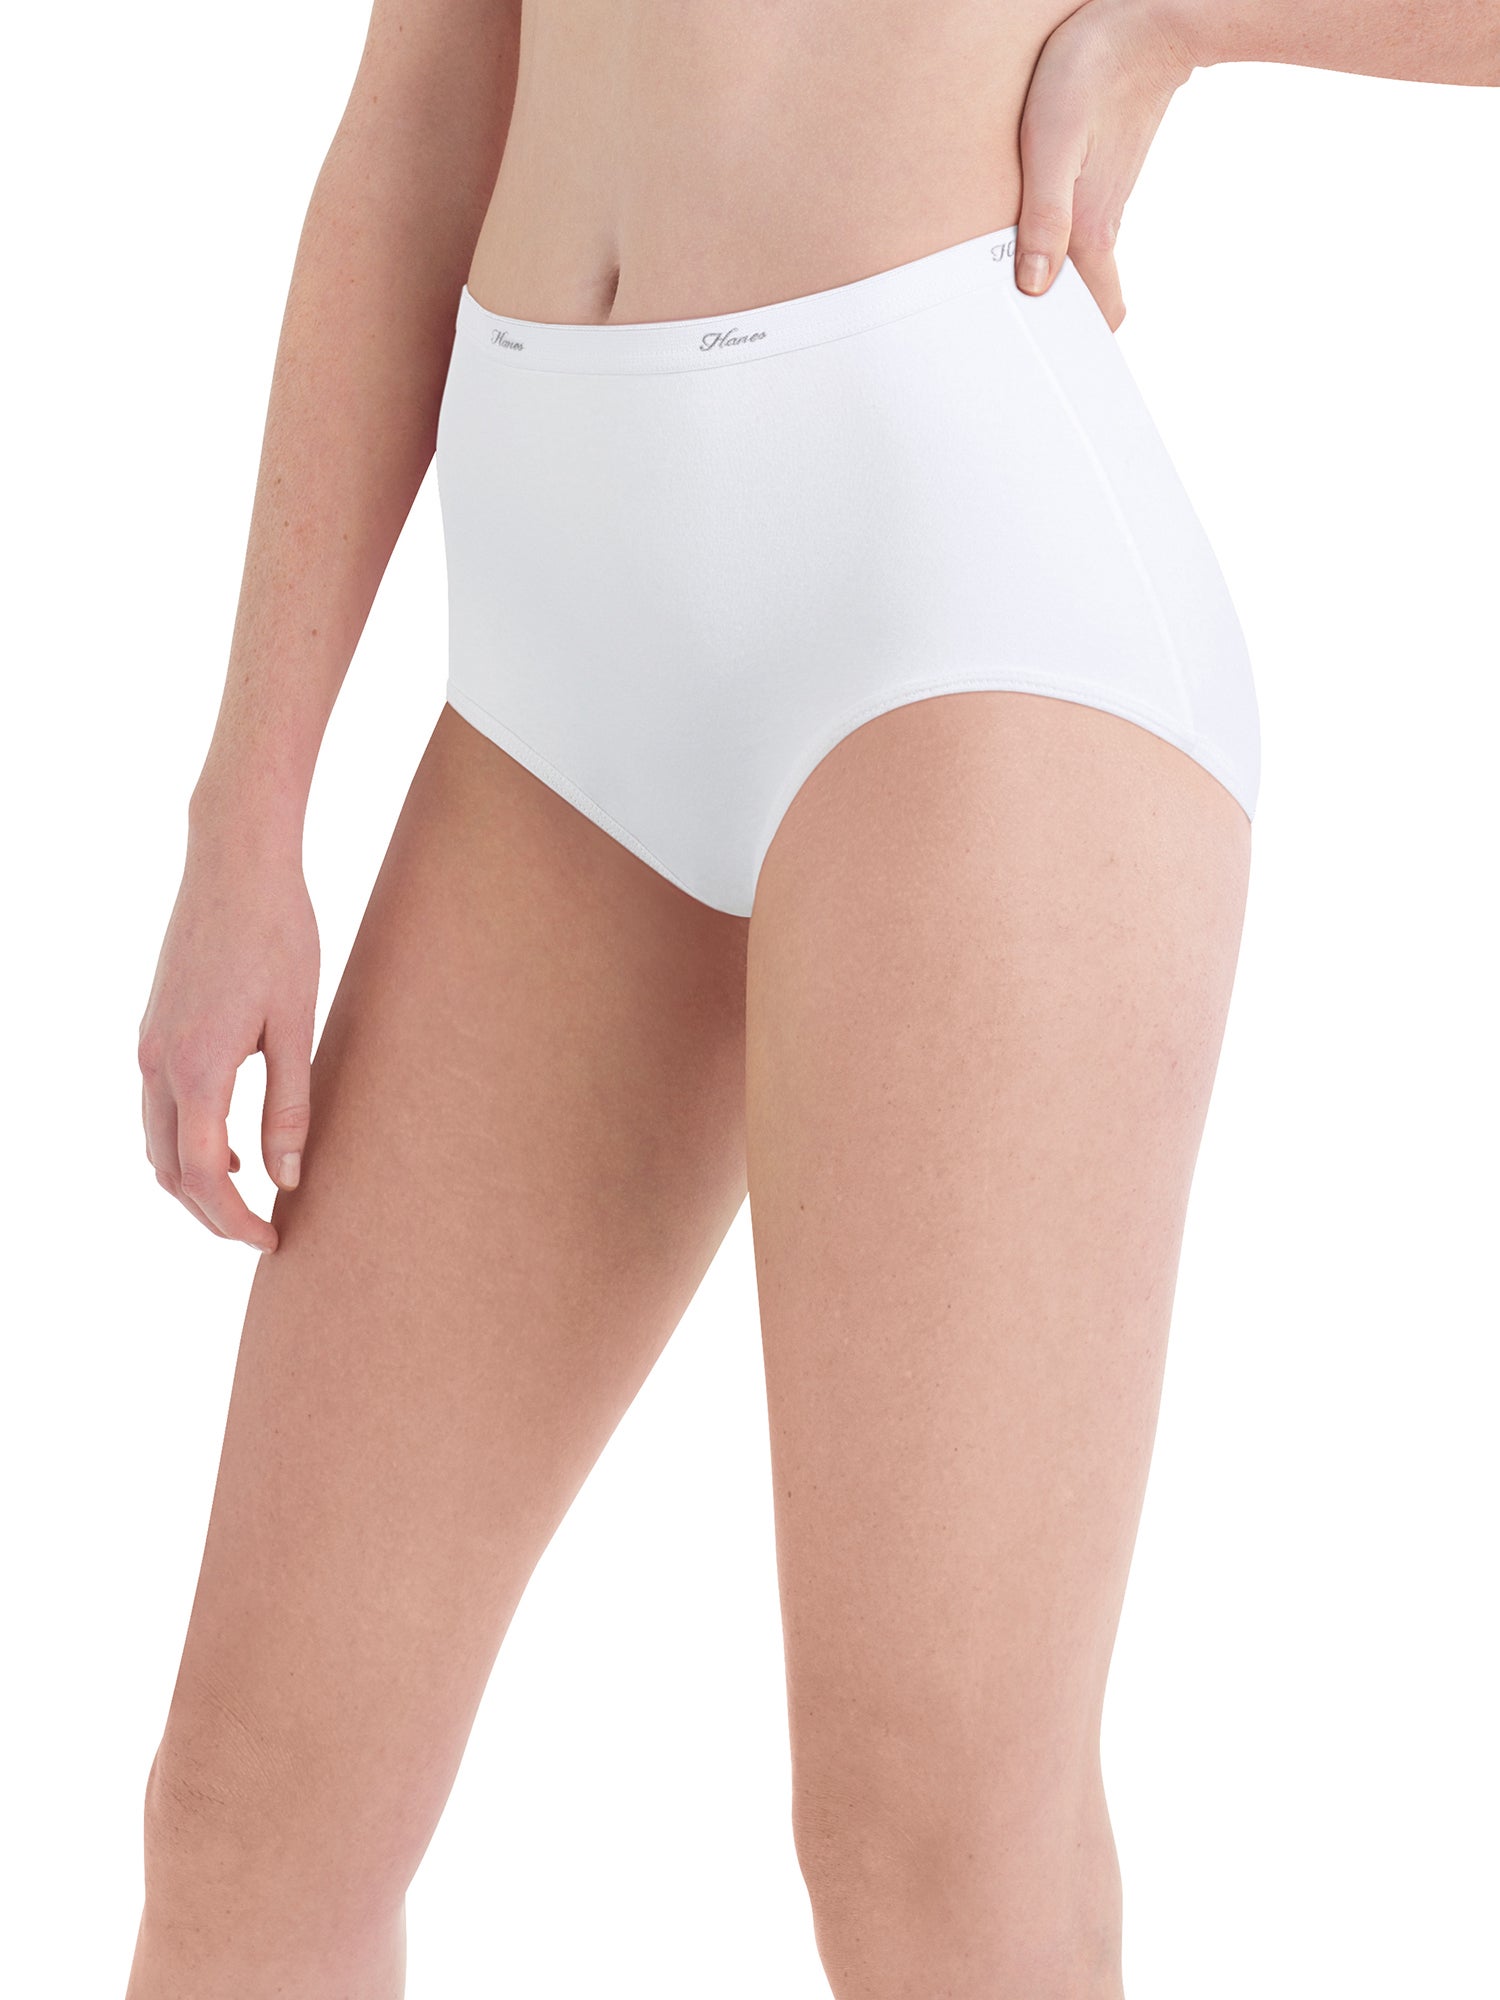 Hanes Women's Ribbed Cotton Brief Underwear 6-Pack